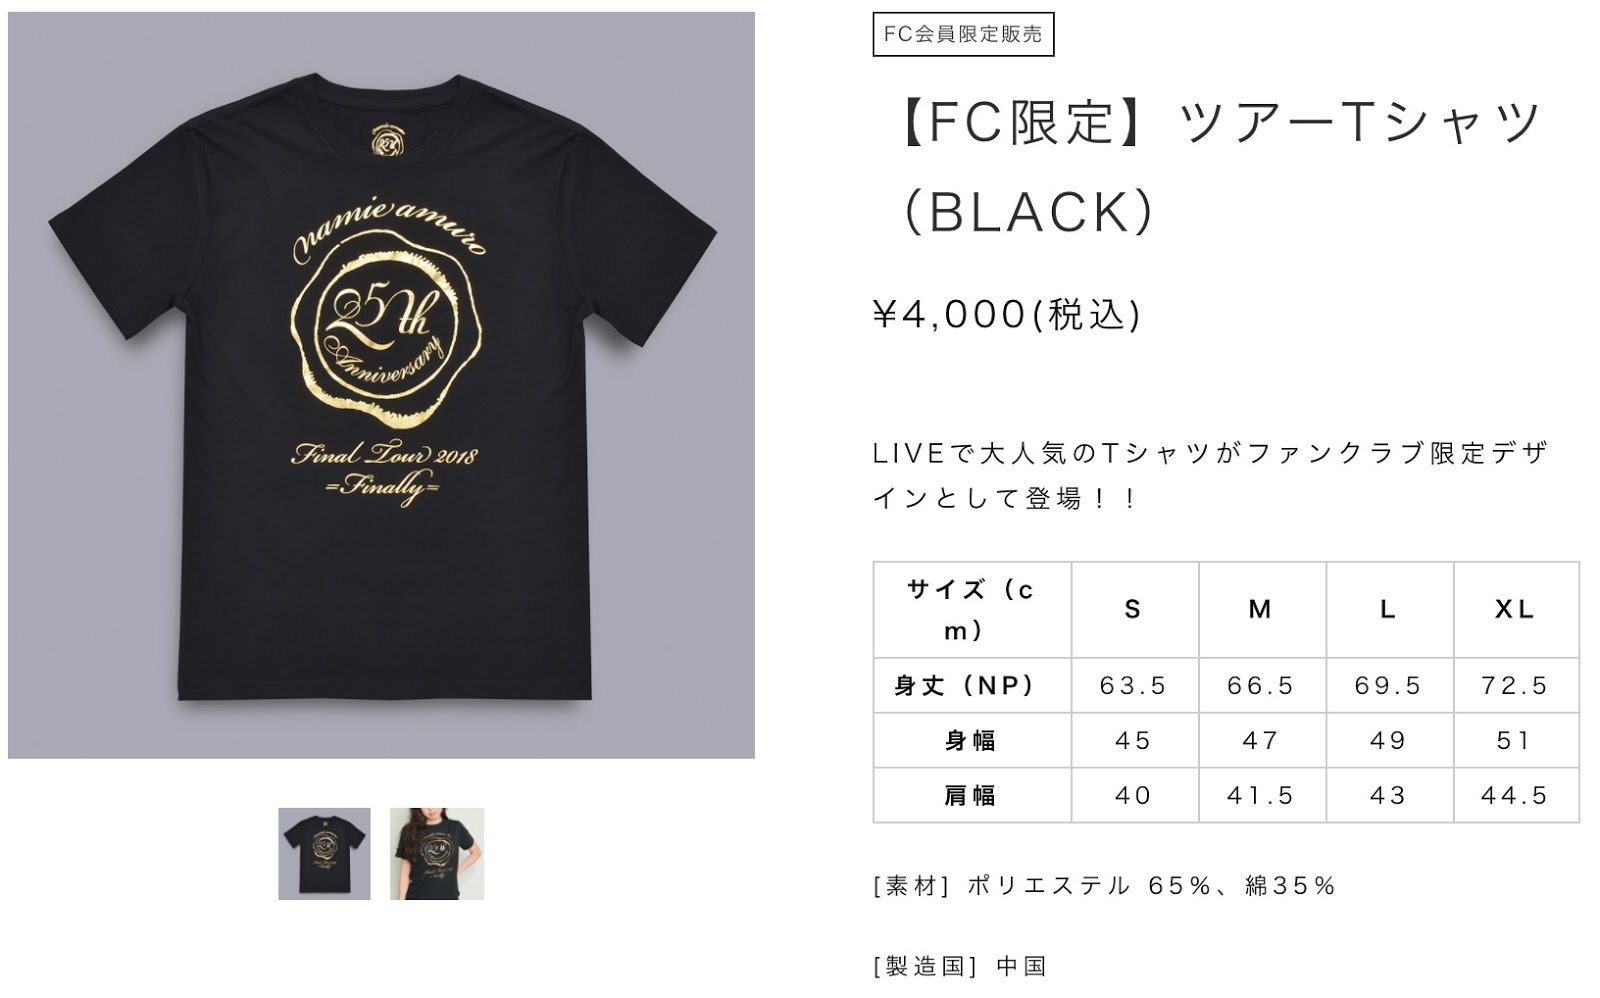 安室奈美恵 finally  ファンクラブ会員限定 Tシャツ   白黒セット